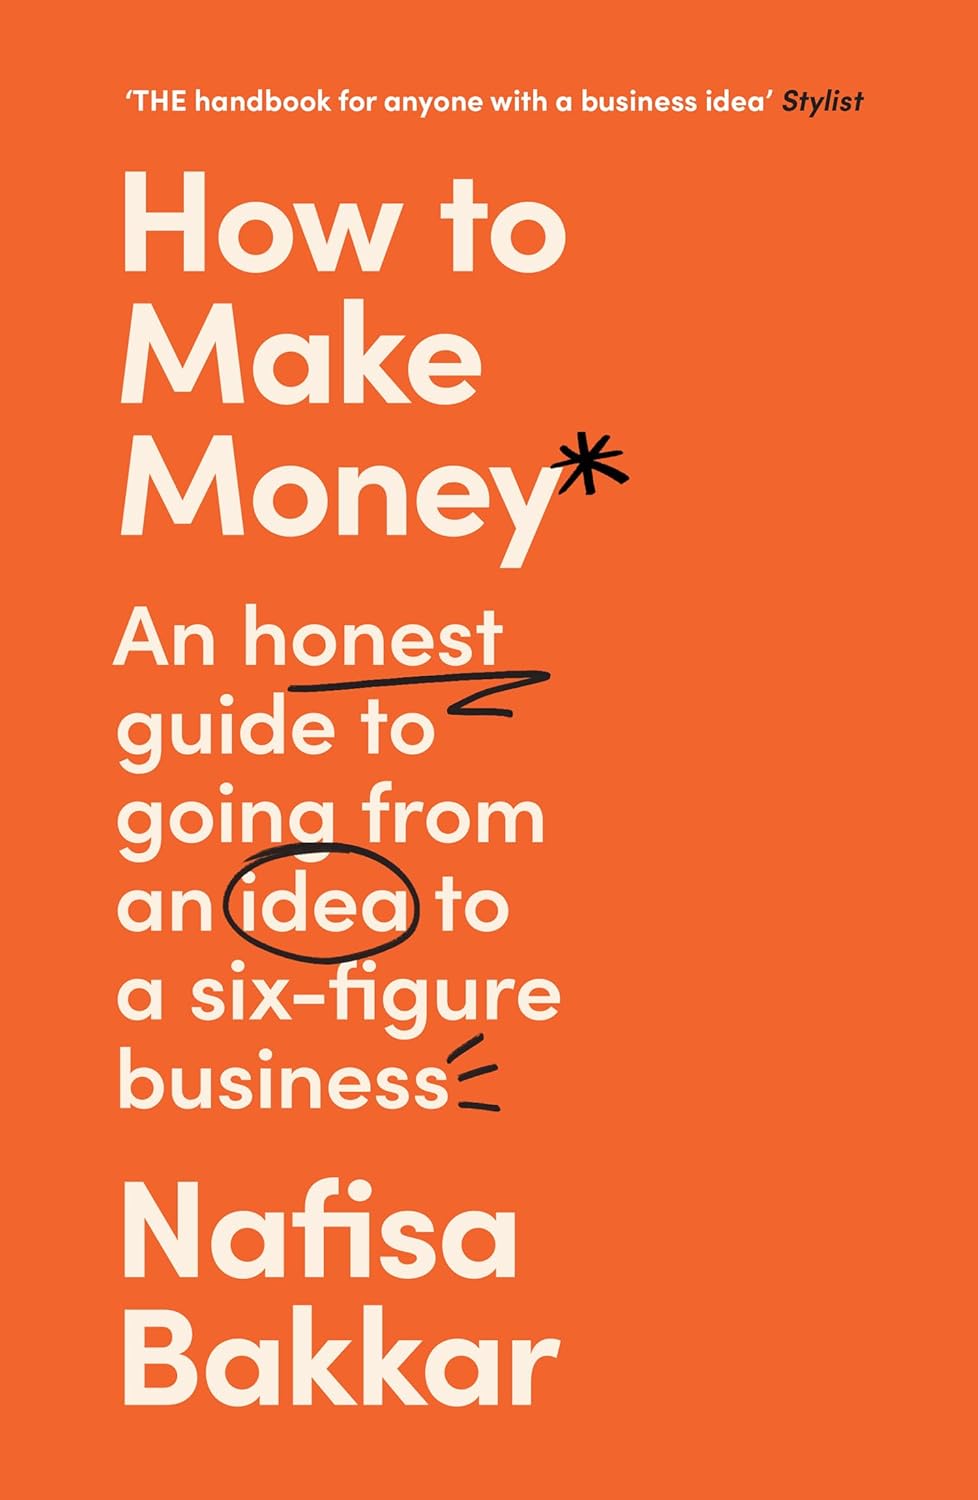 How to Make Money | Nafisa Bakkar